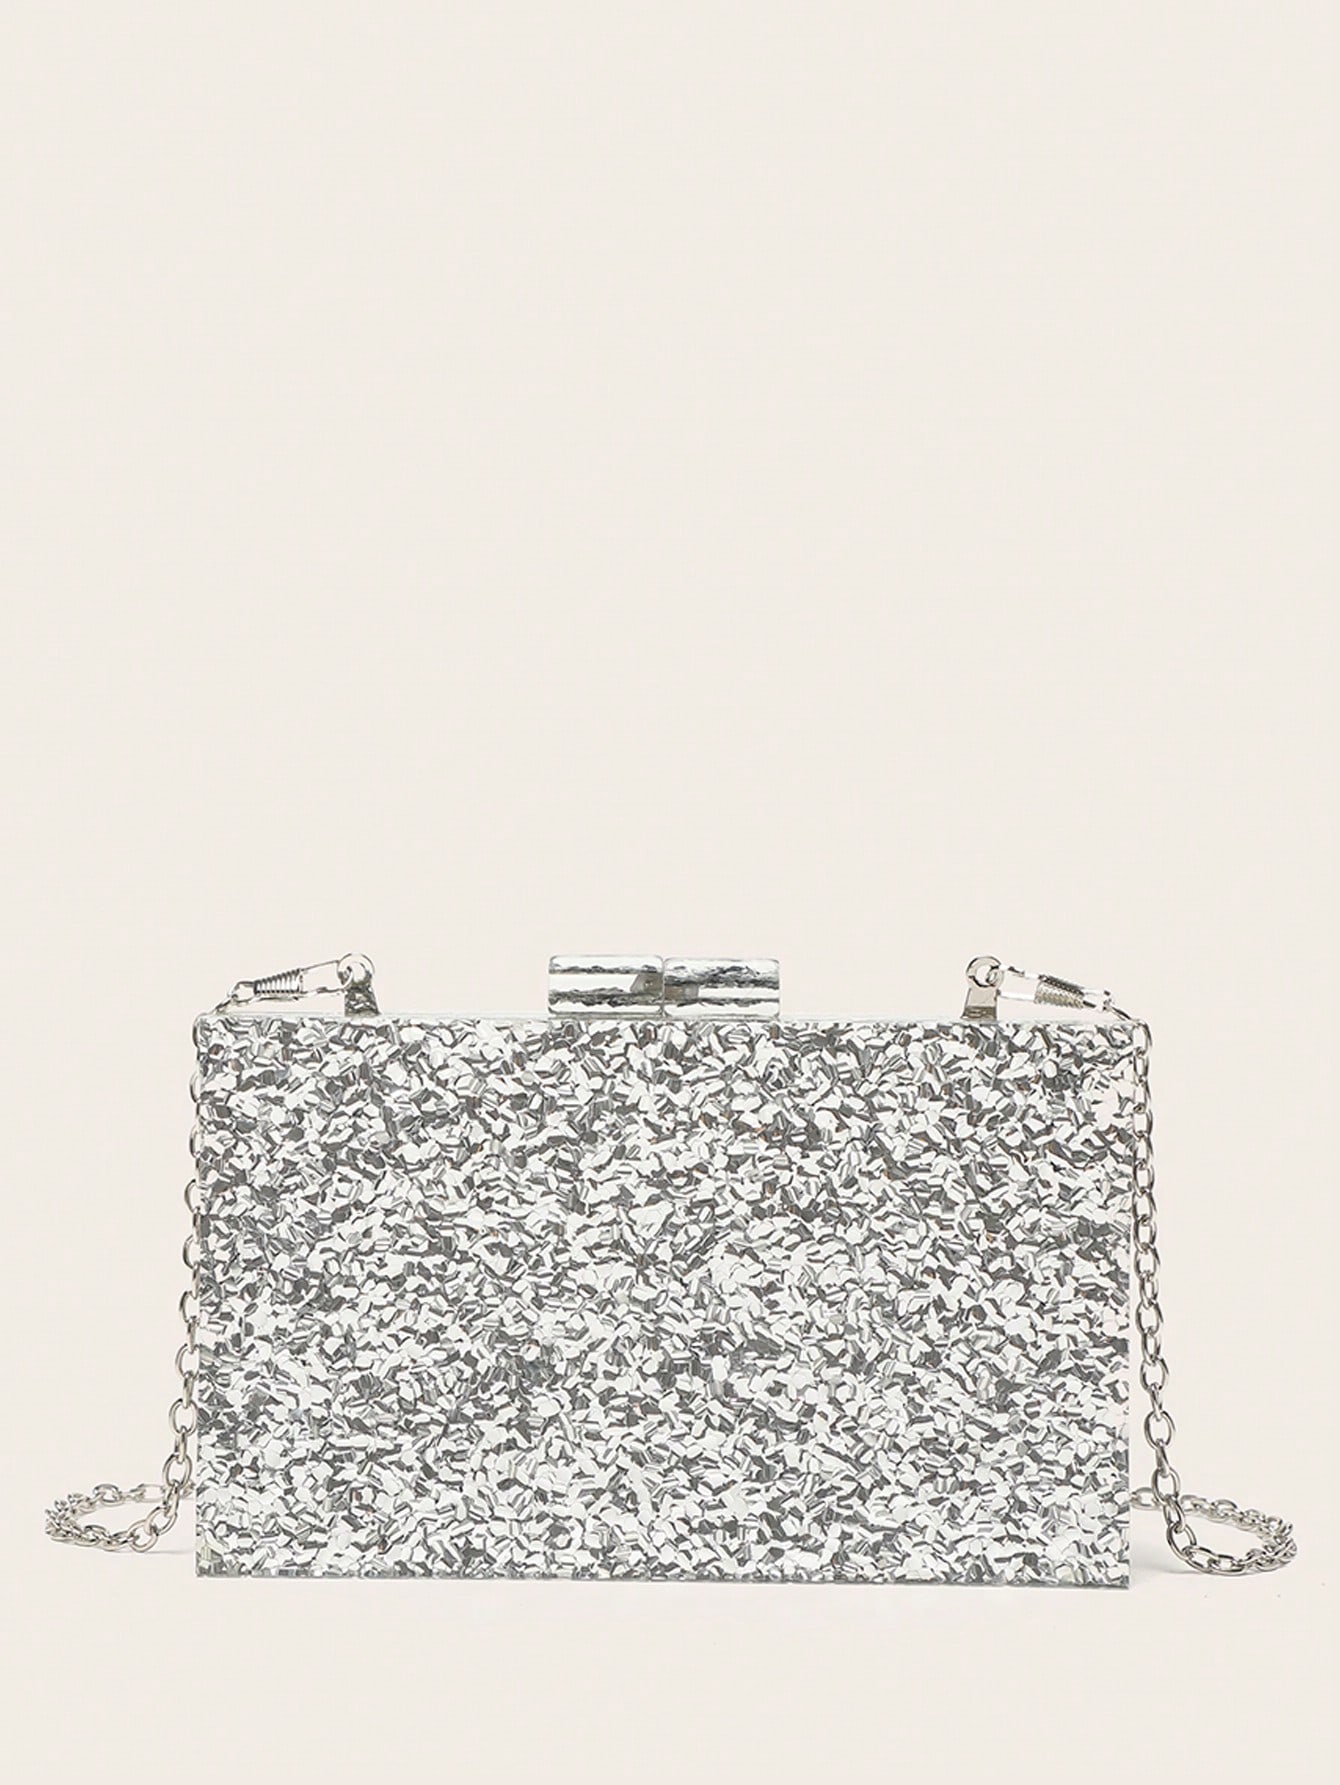 Мини-блестящий квадратный вечерний клатч в подарокMerry, серебро